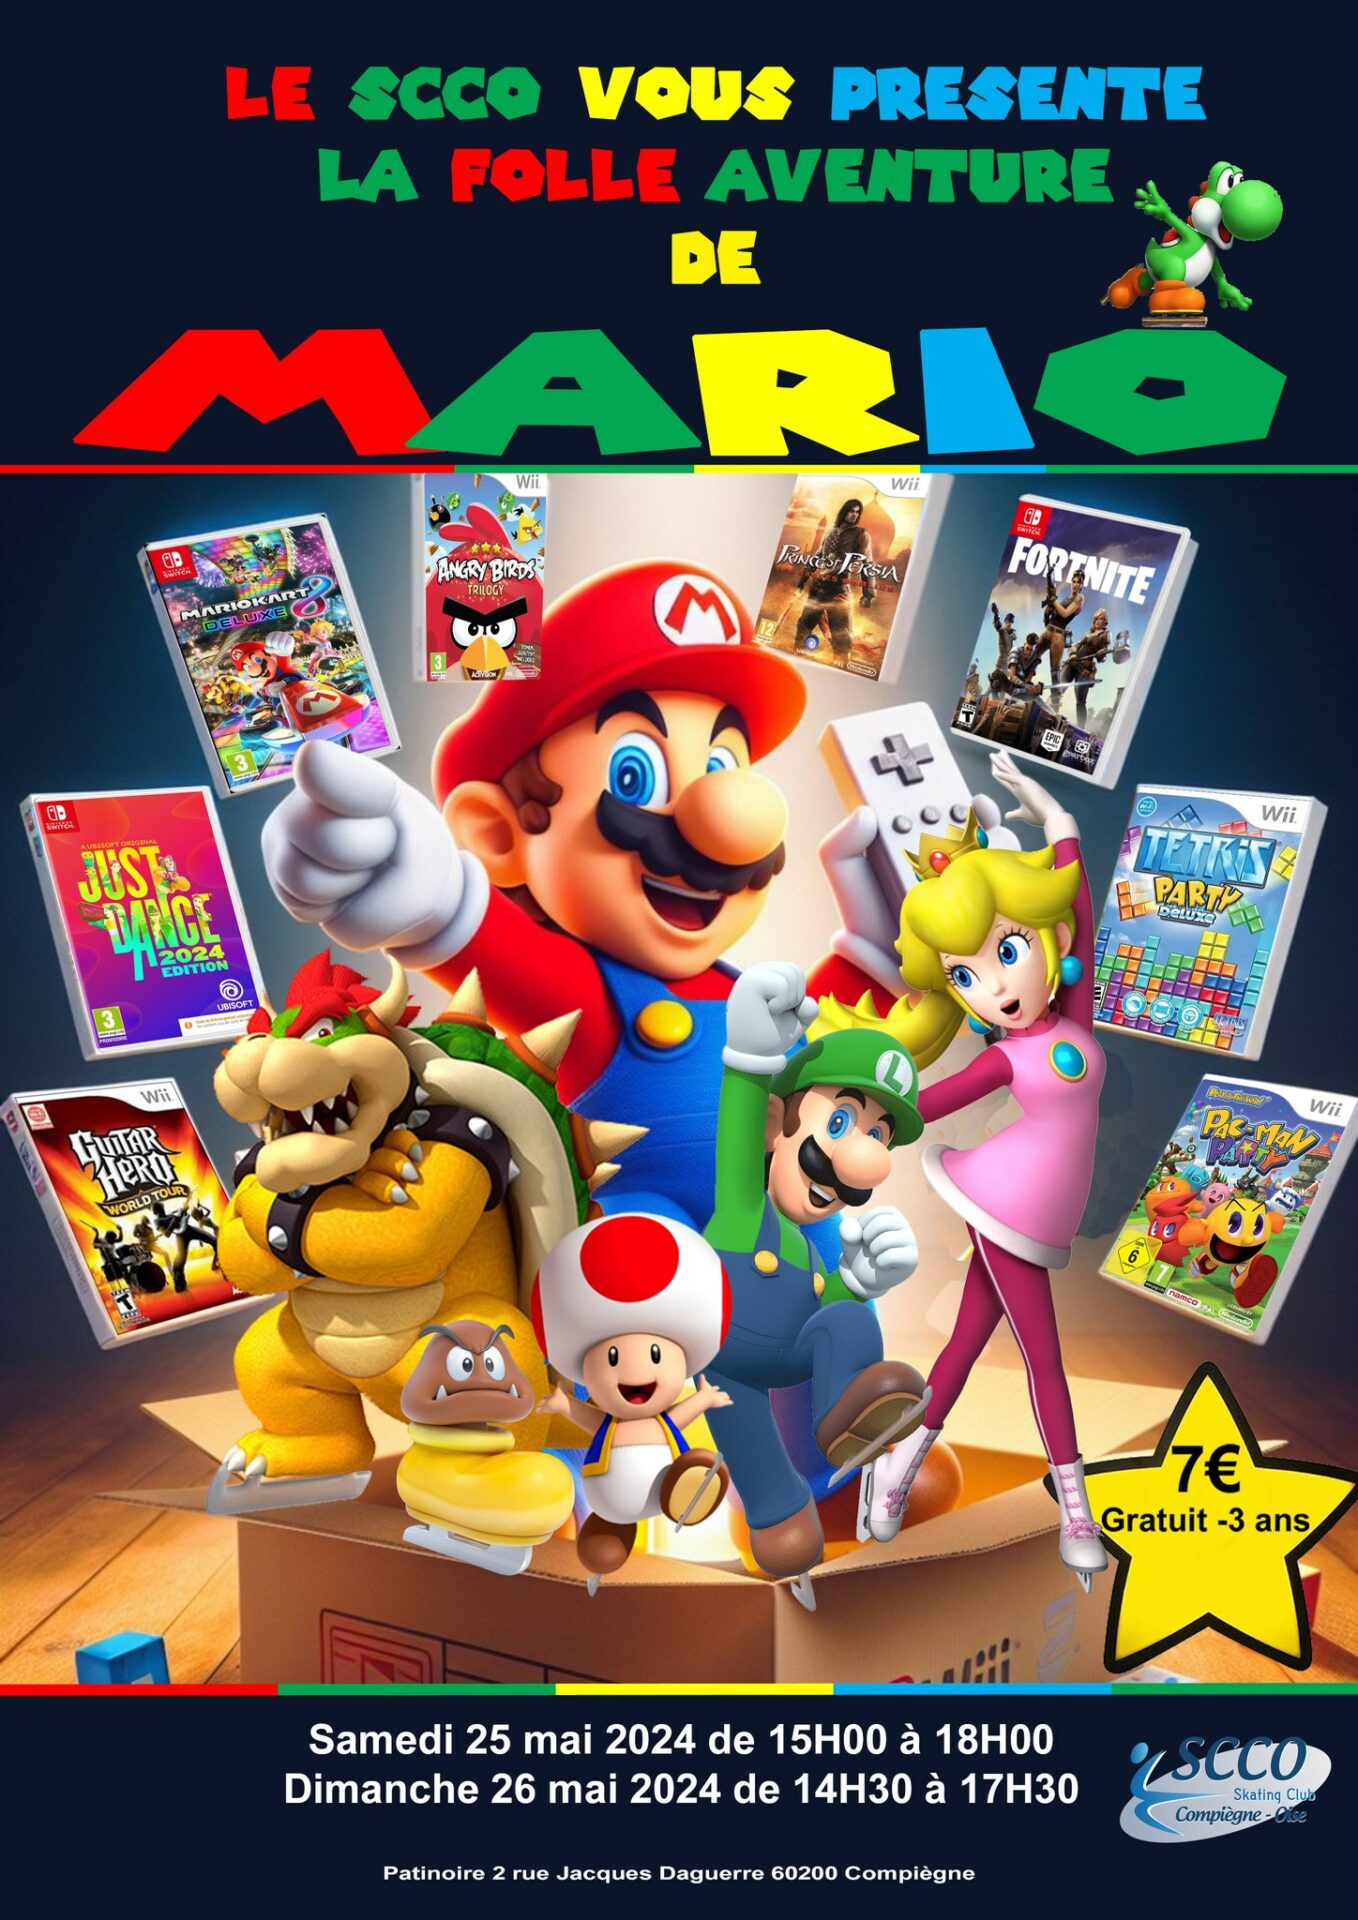 Gala du SCCO "La folle aventure de Mario"